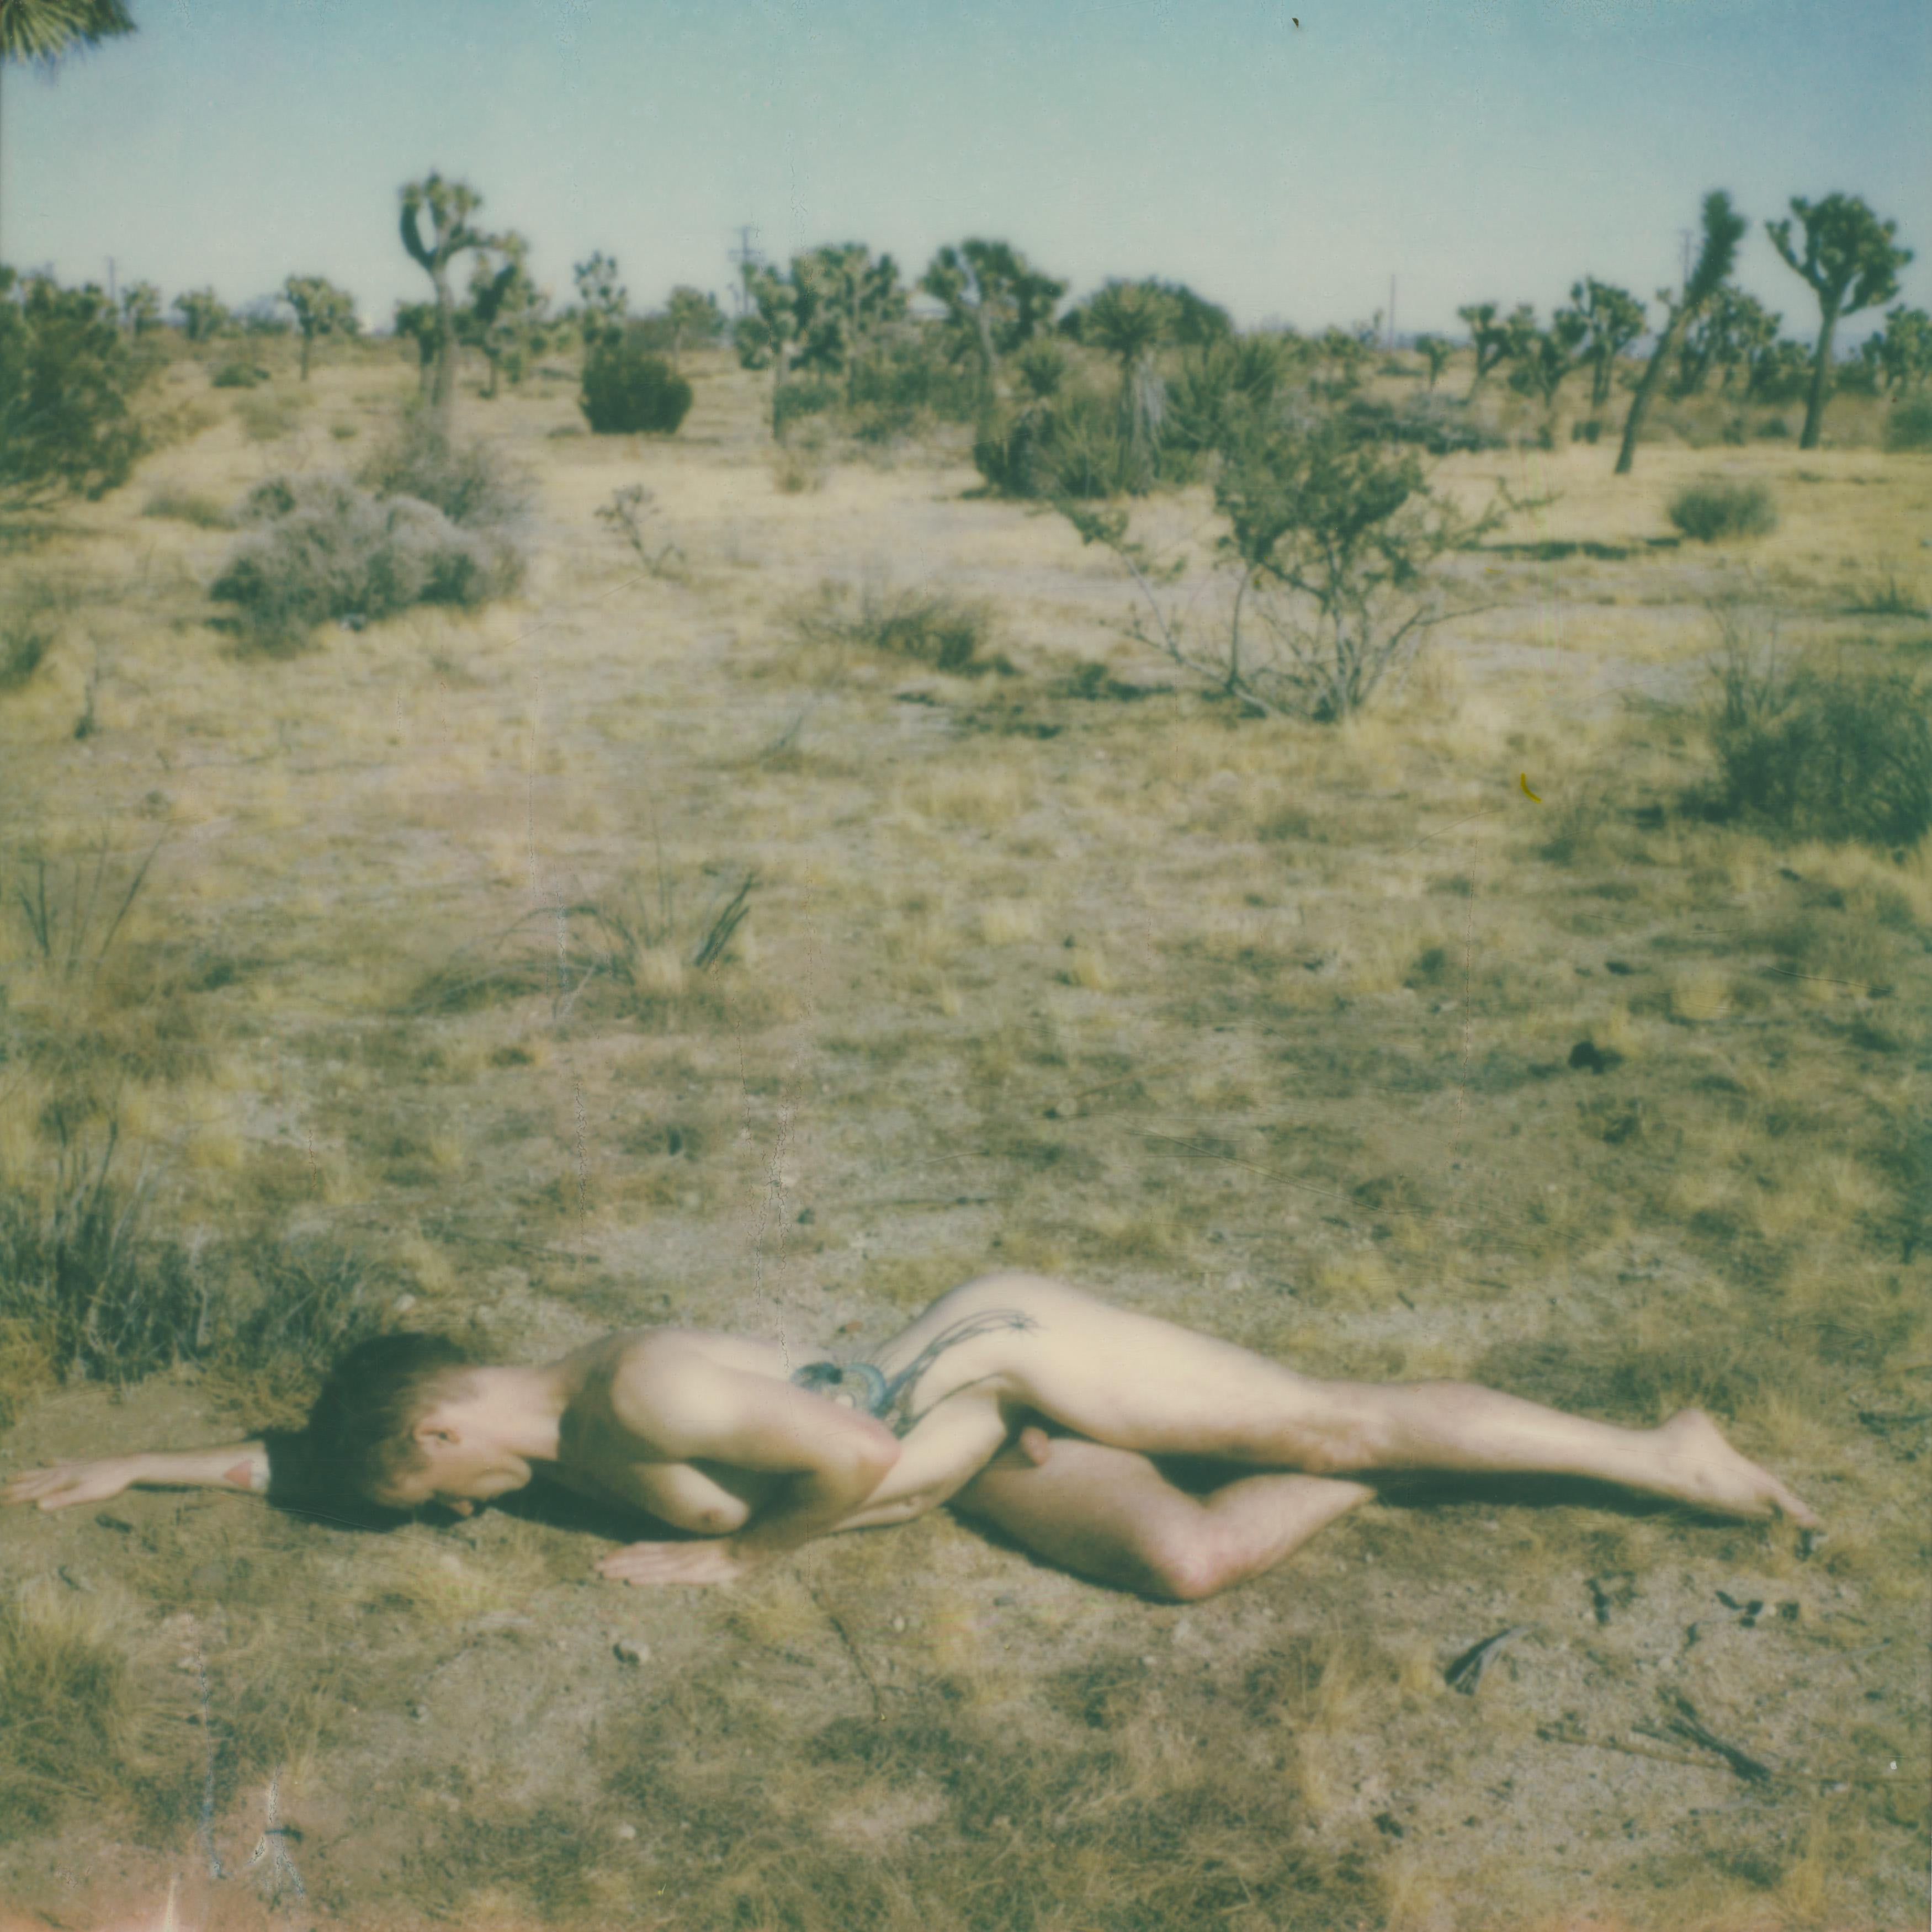 Spread - Contemporary, Polaroid, Nude, 21st Century, Joshua Tree